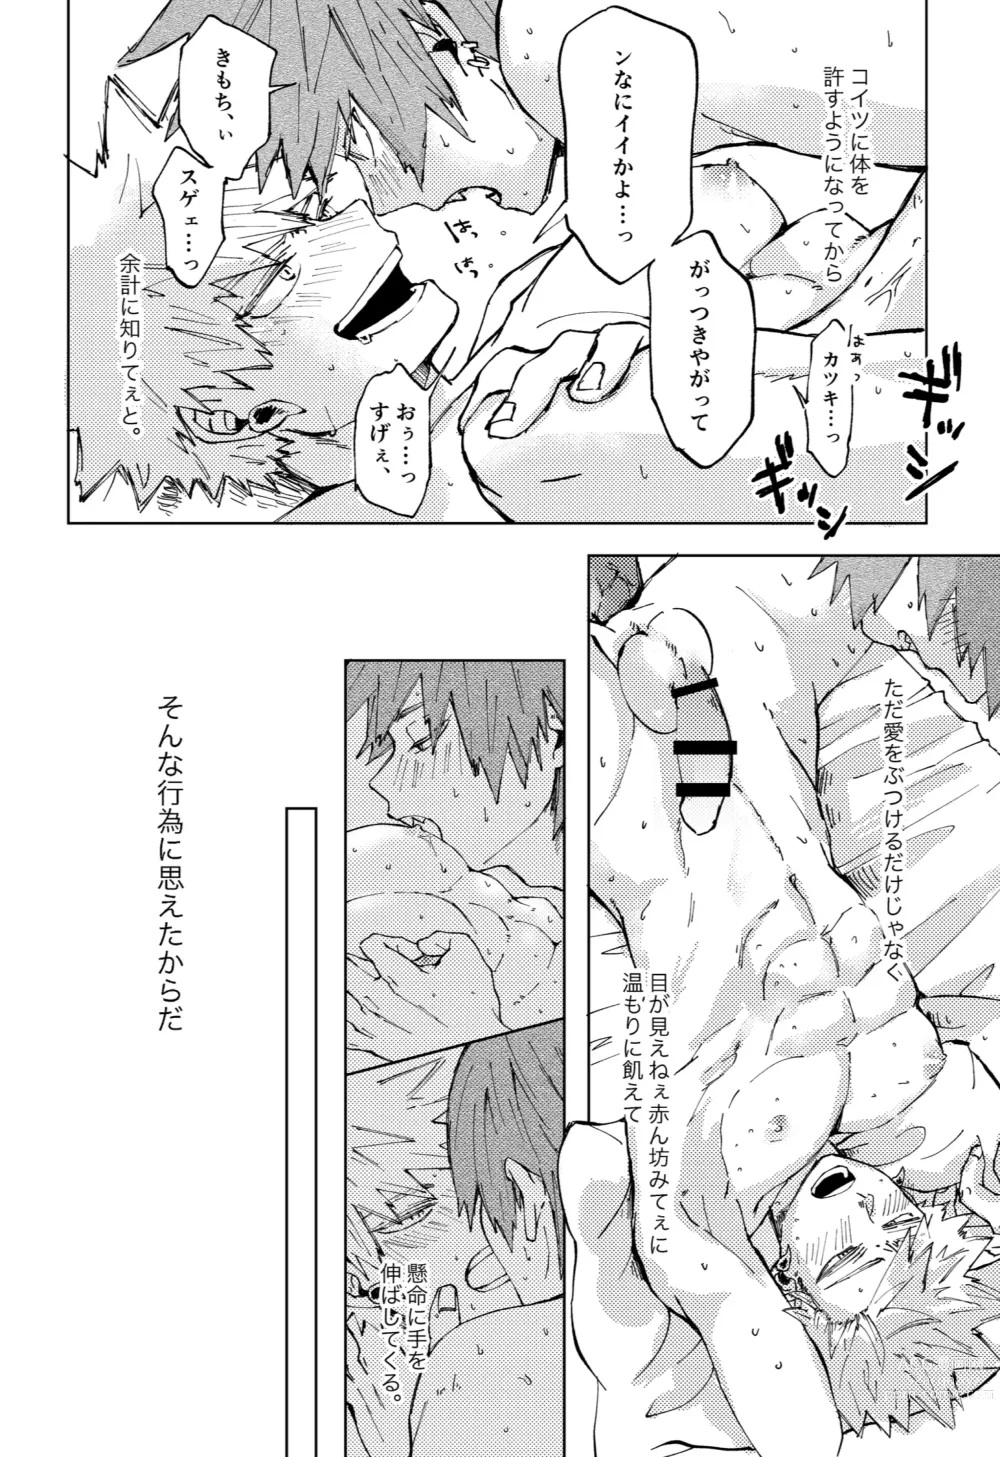 Page 12 of doujinshi Futatsu no Inochi